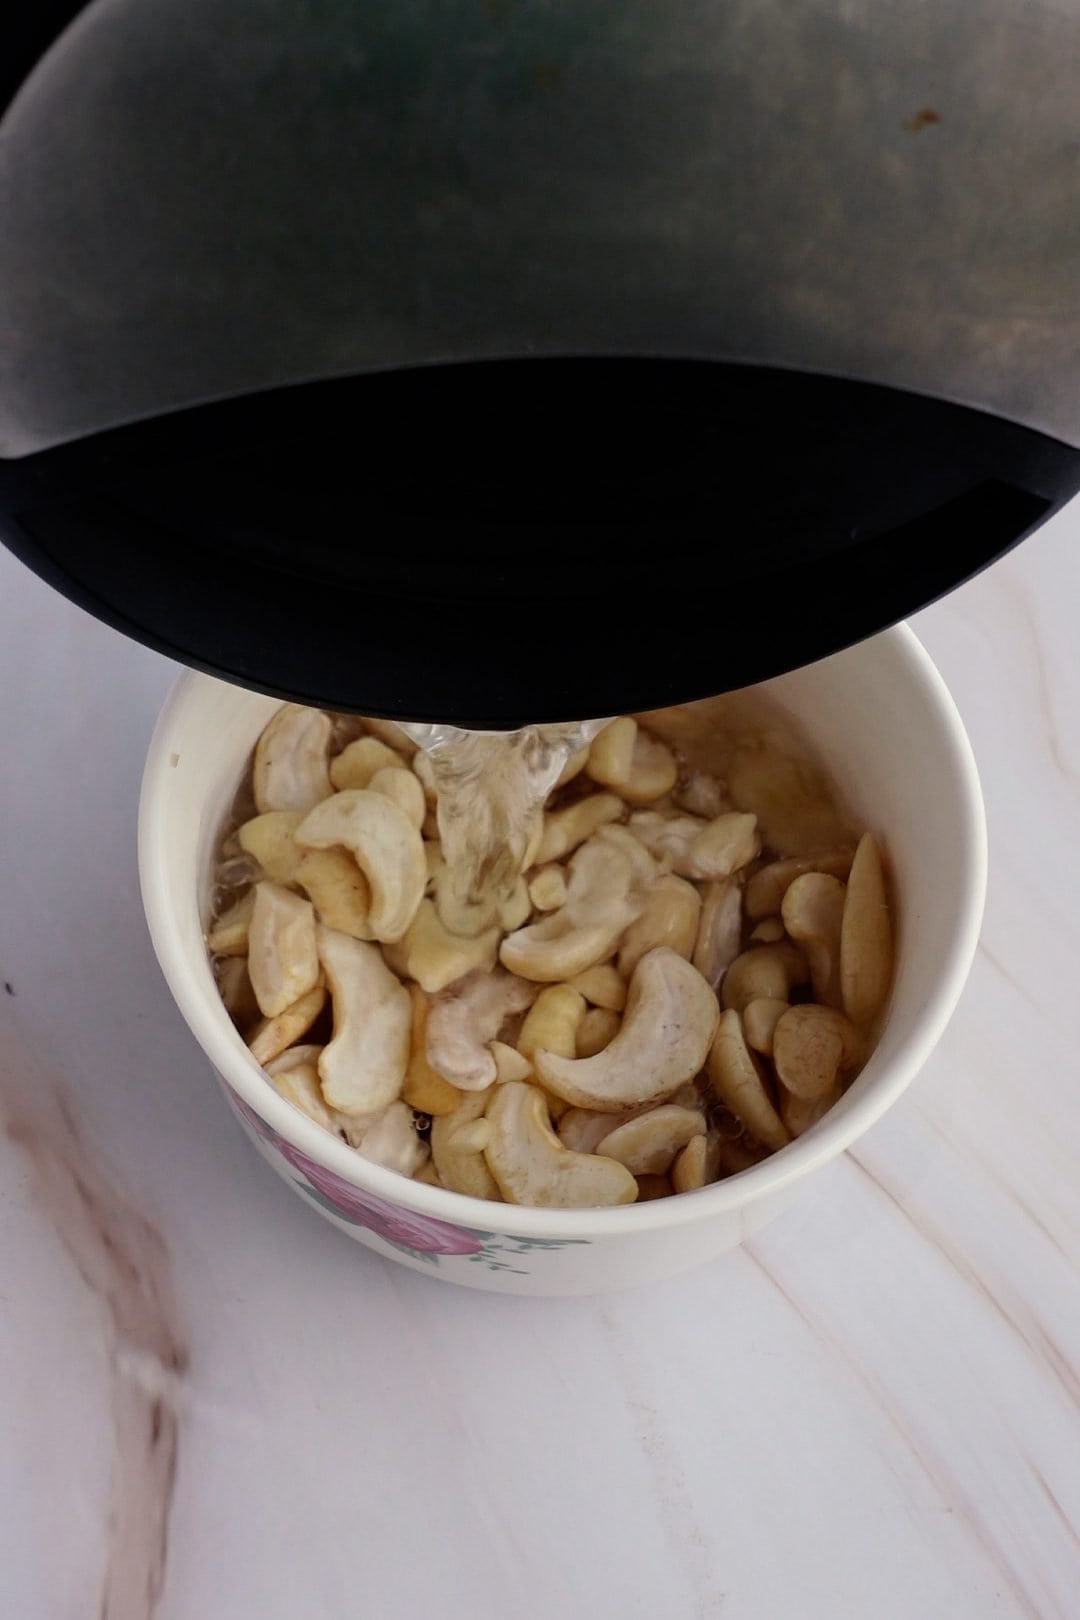 Soak the cashews